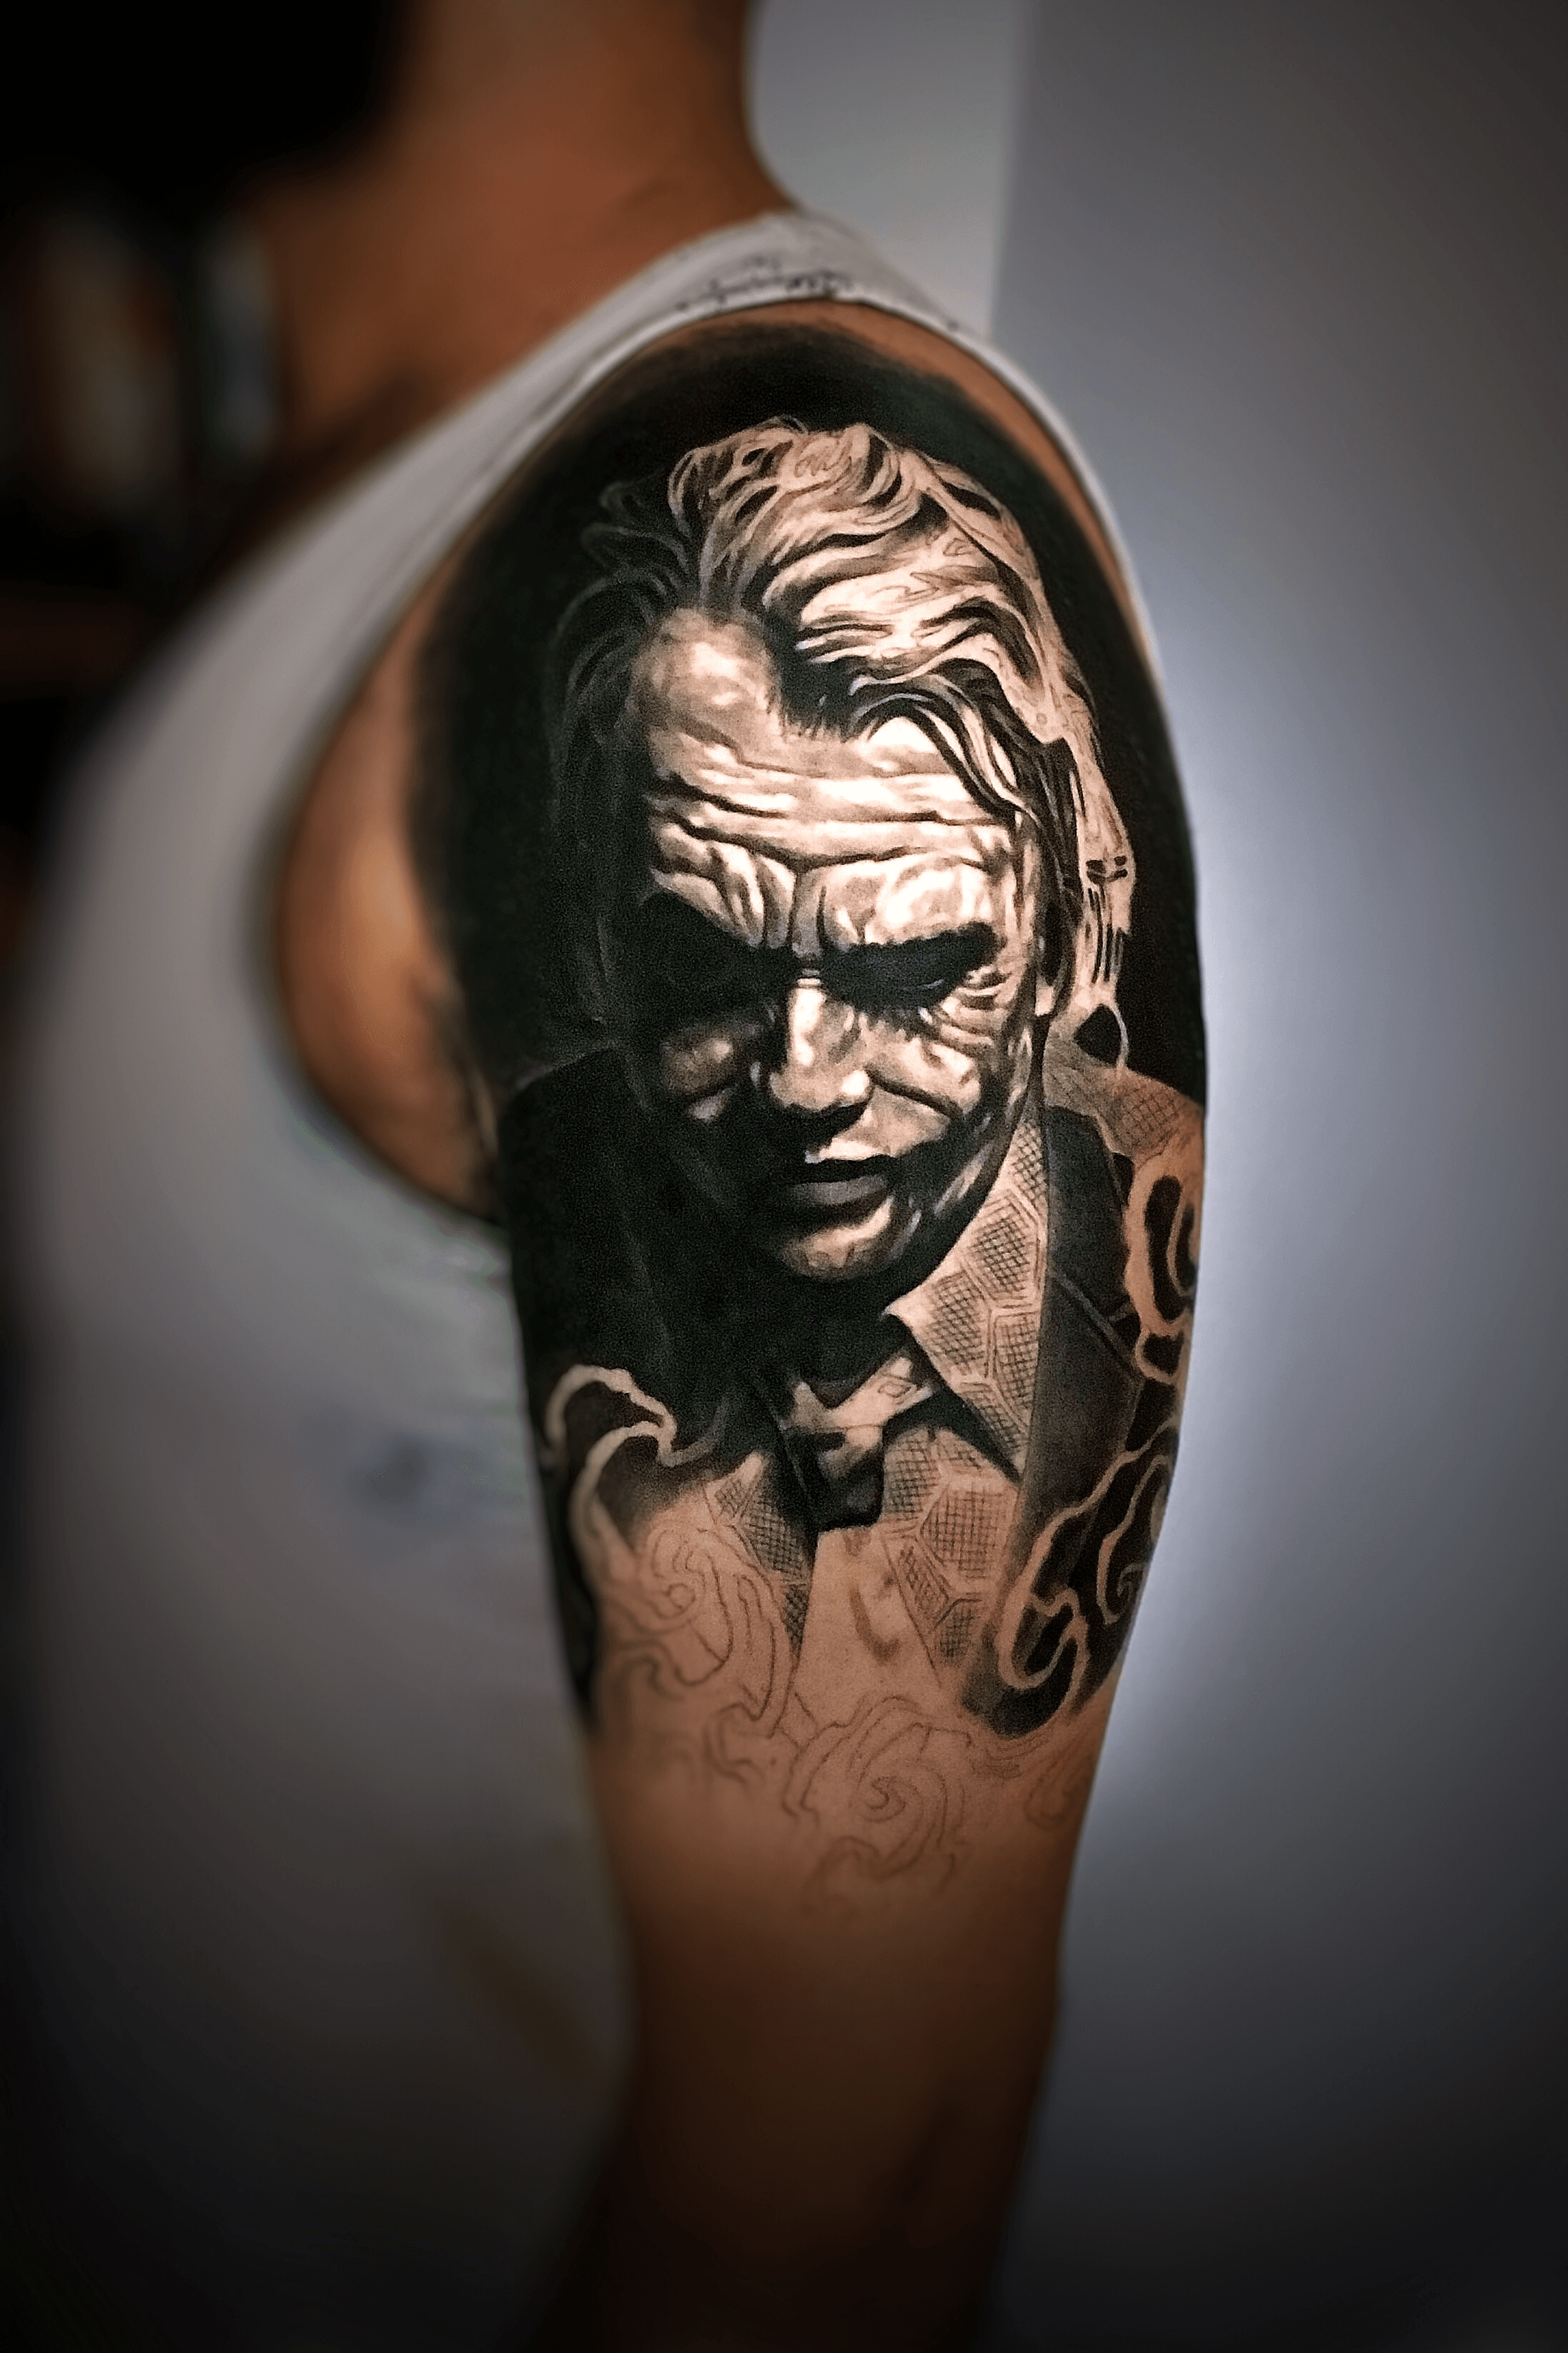 Joker tattoo – All Things Tattoo